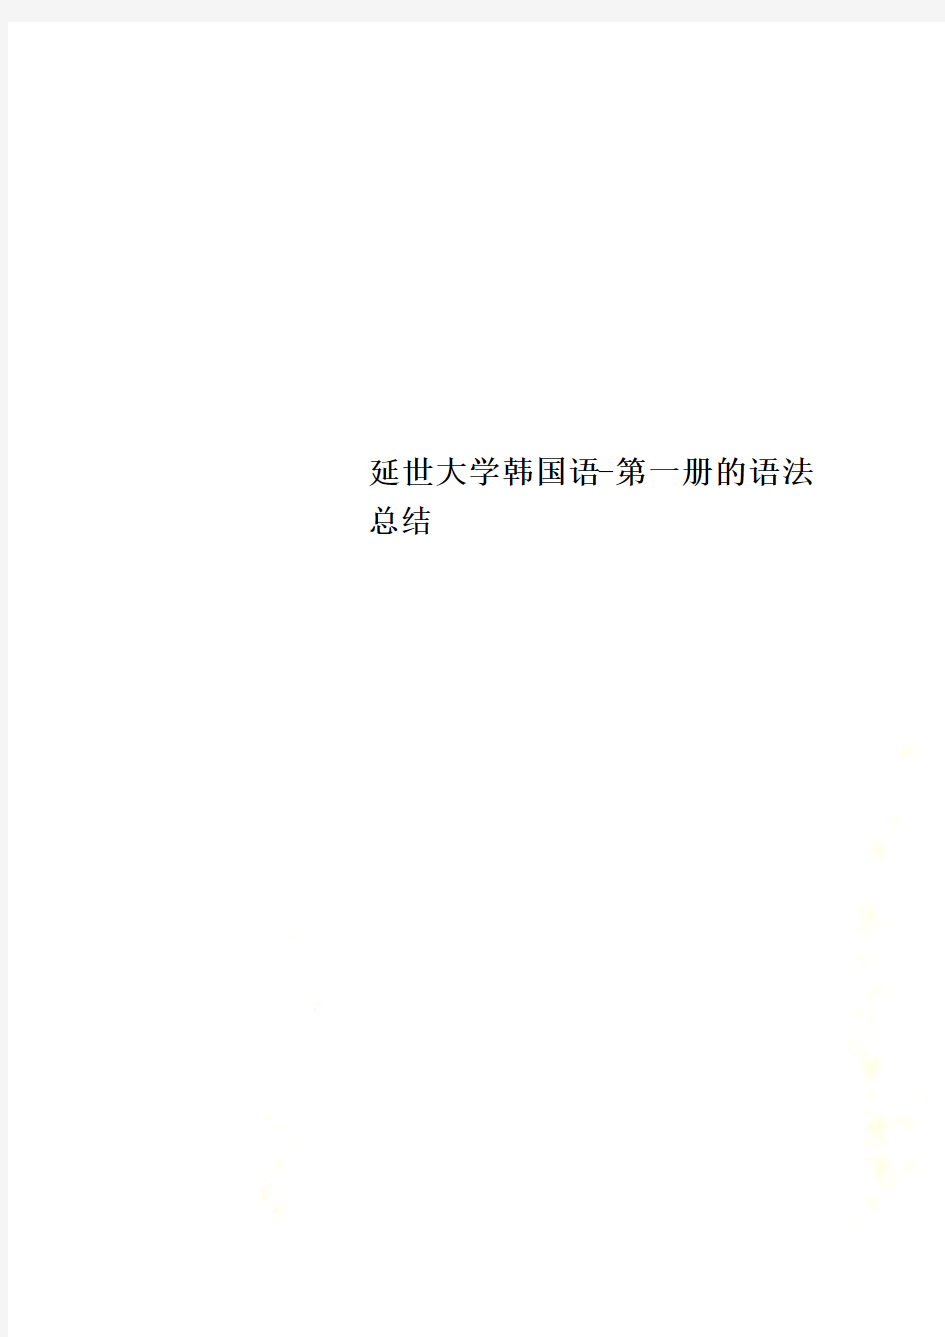 延世大学韩国语-第一册的语法总结